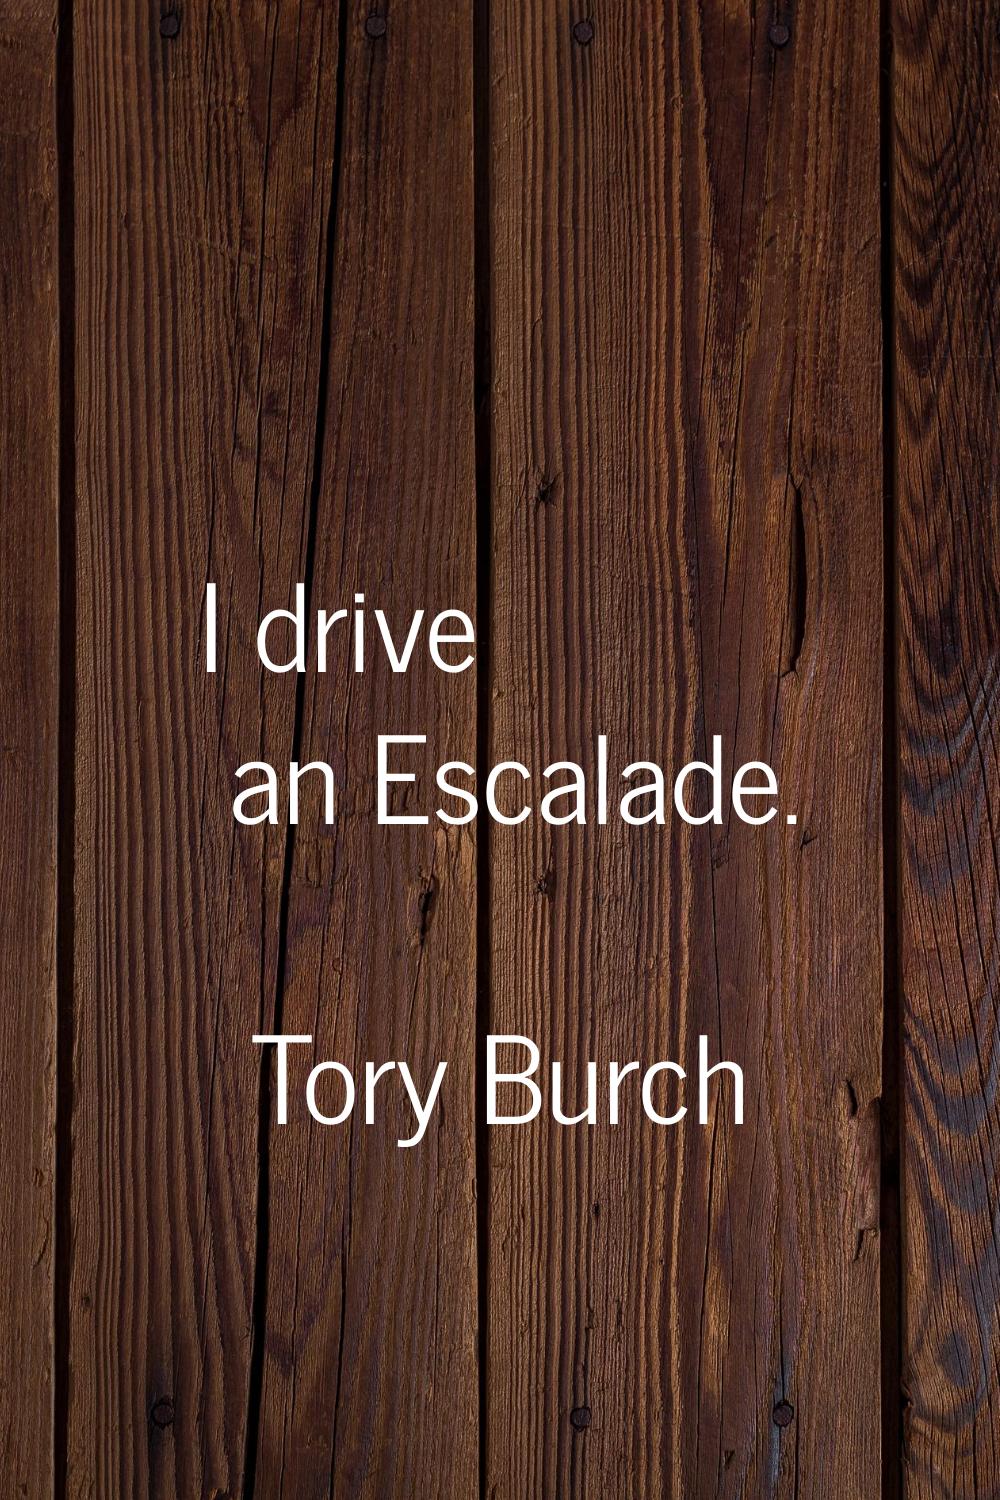 I drive an Escalade.